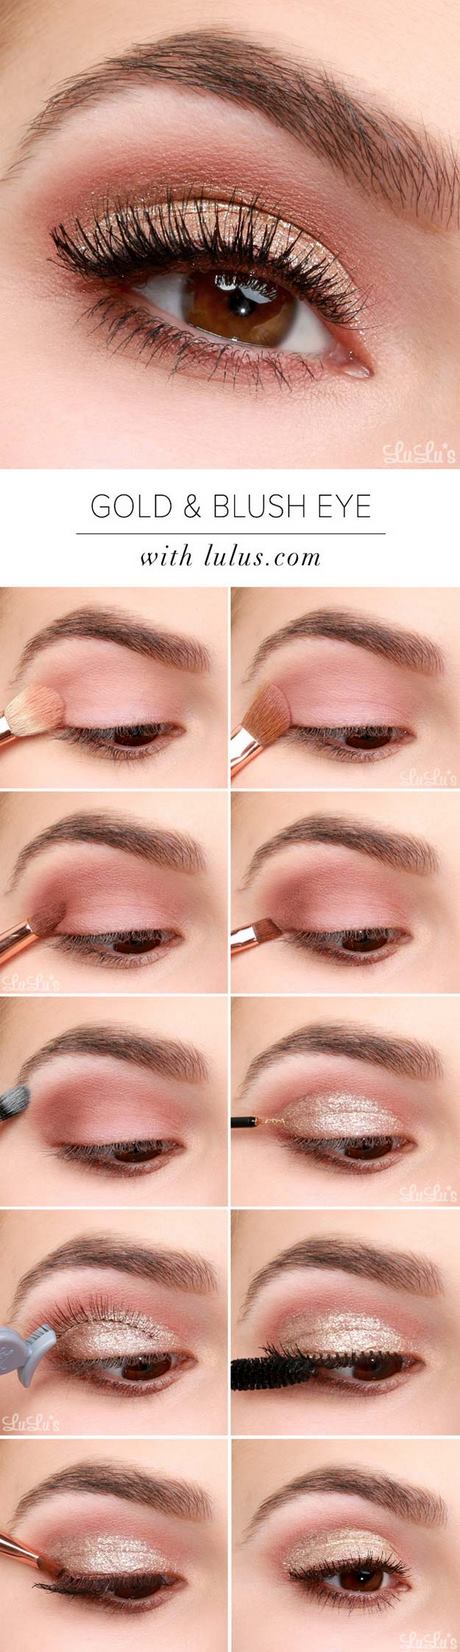 Tips voor oog make-up